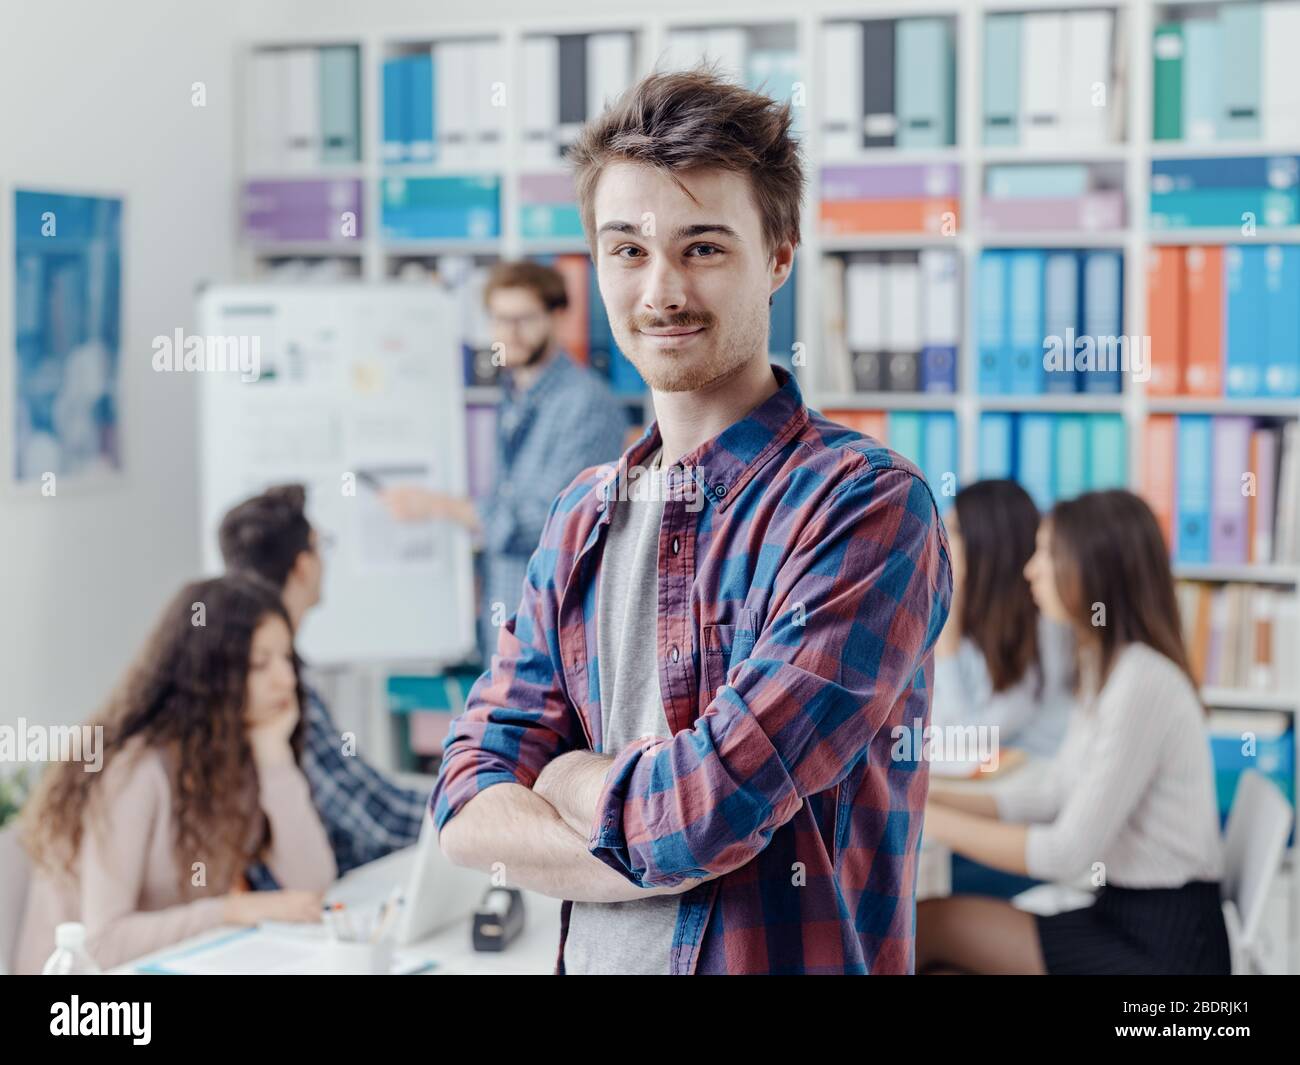 Gruppo di studenti universitari che si riuniscono e studiano insieme, uno studente sta posando e sorridendo in primo piano Foto Stock